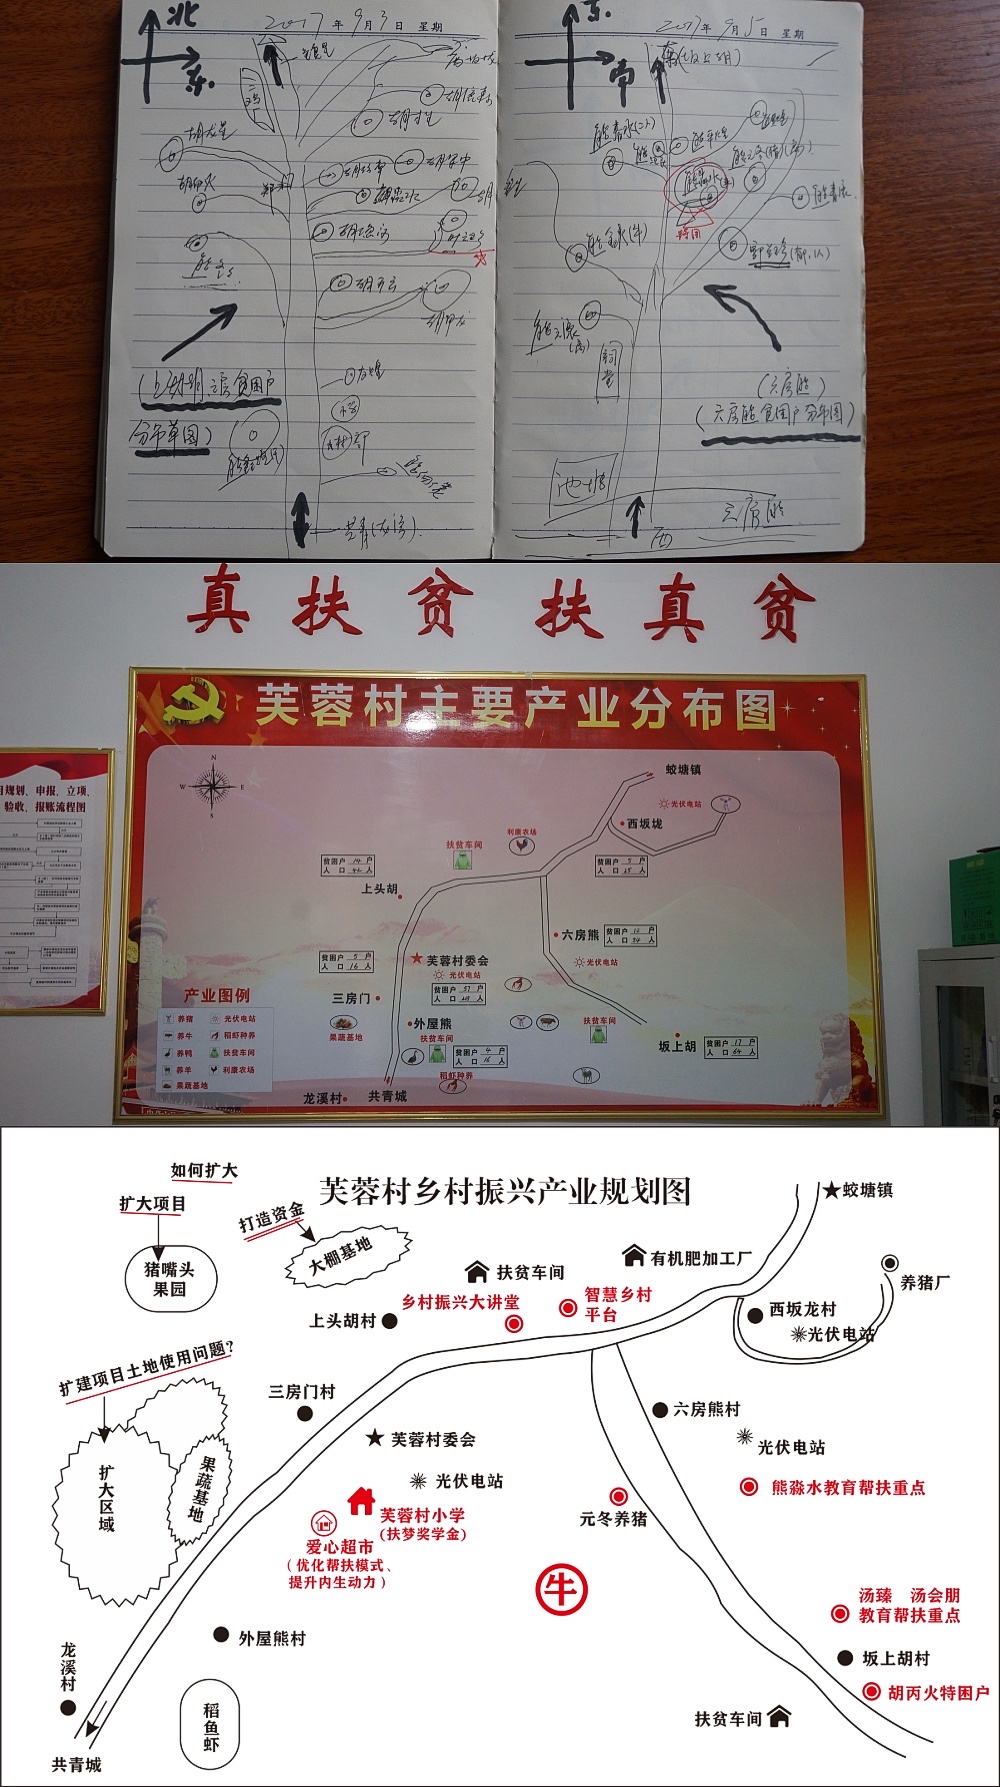 而是江西省庐山市蛟塘镇芙蓉村驻村第一书记李然手绘的脱贫地图